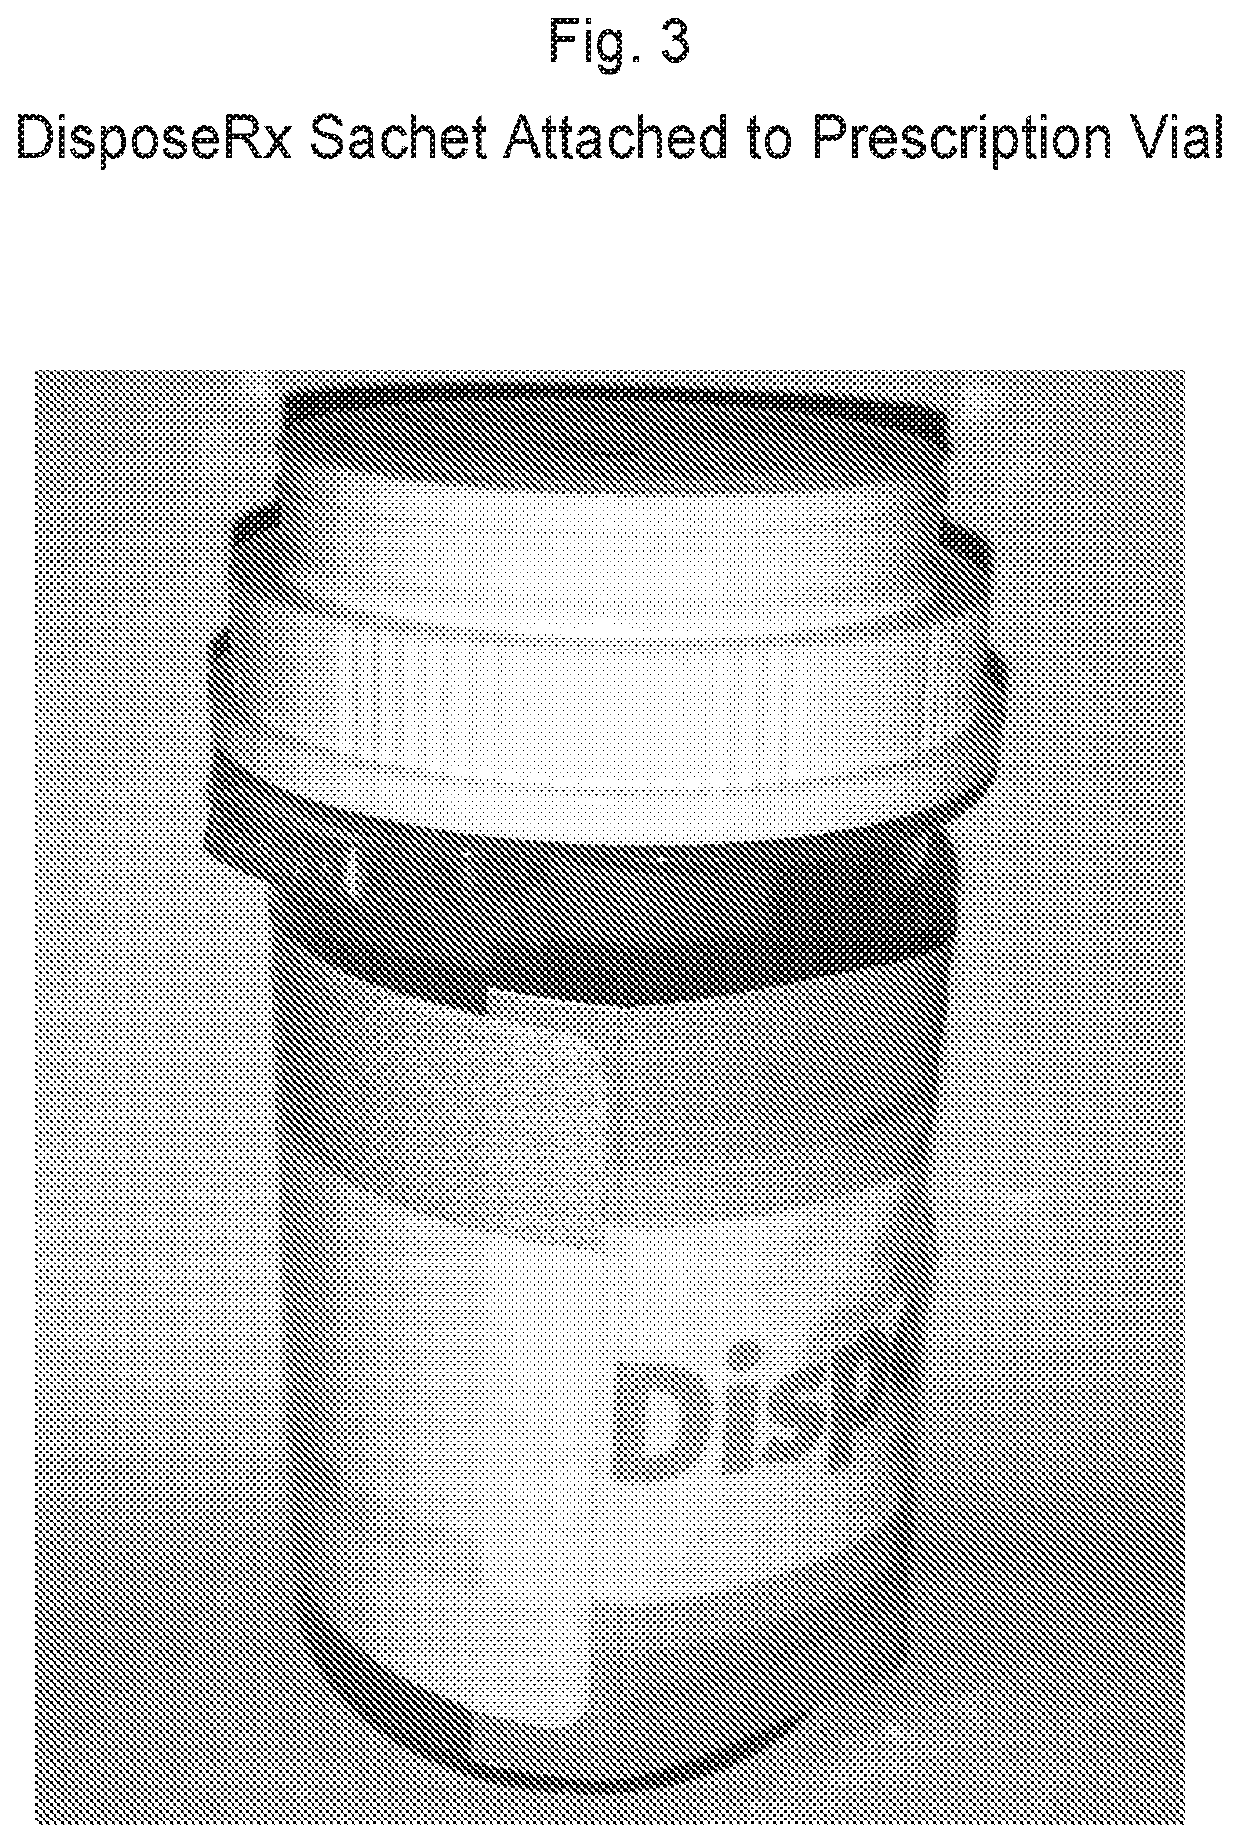 Disposal of medicaments